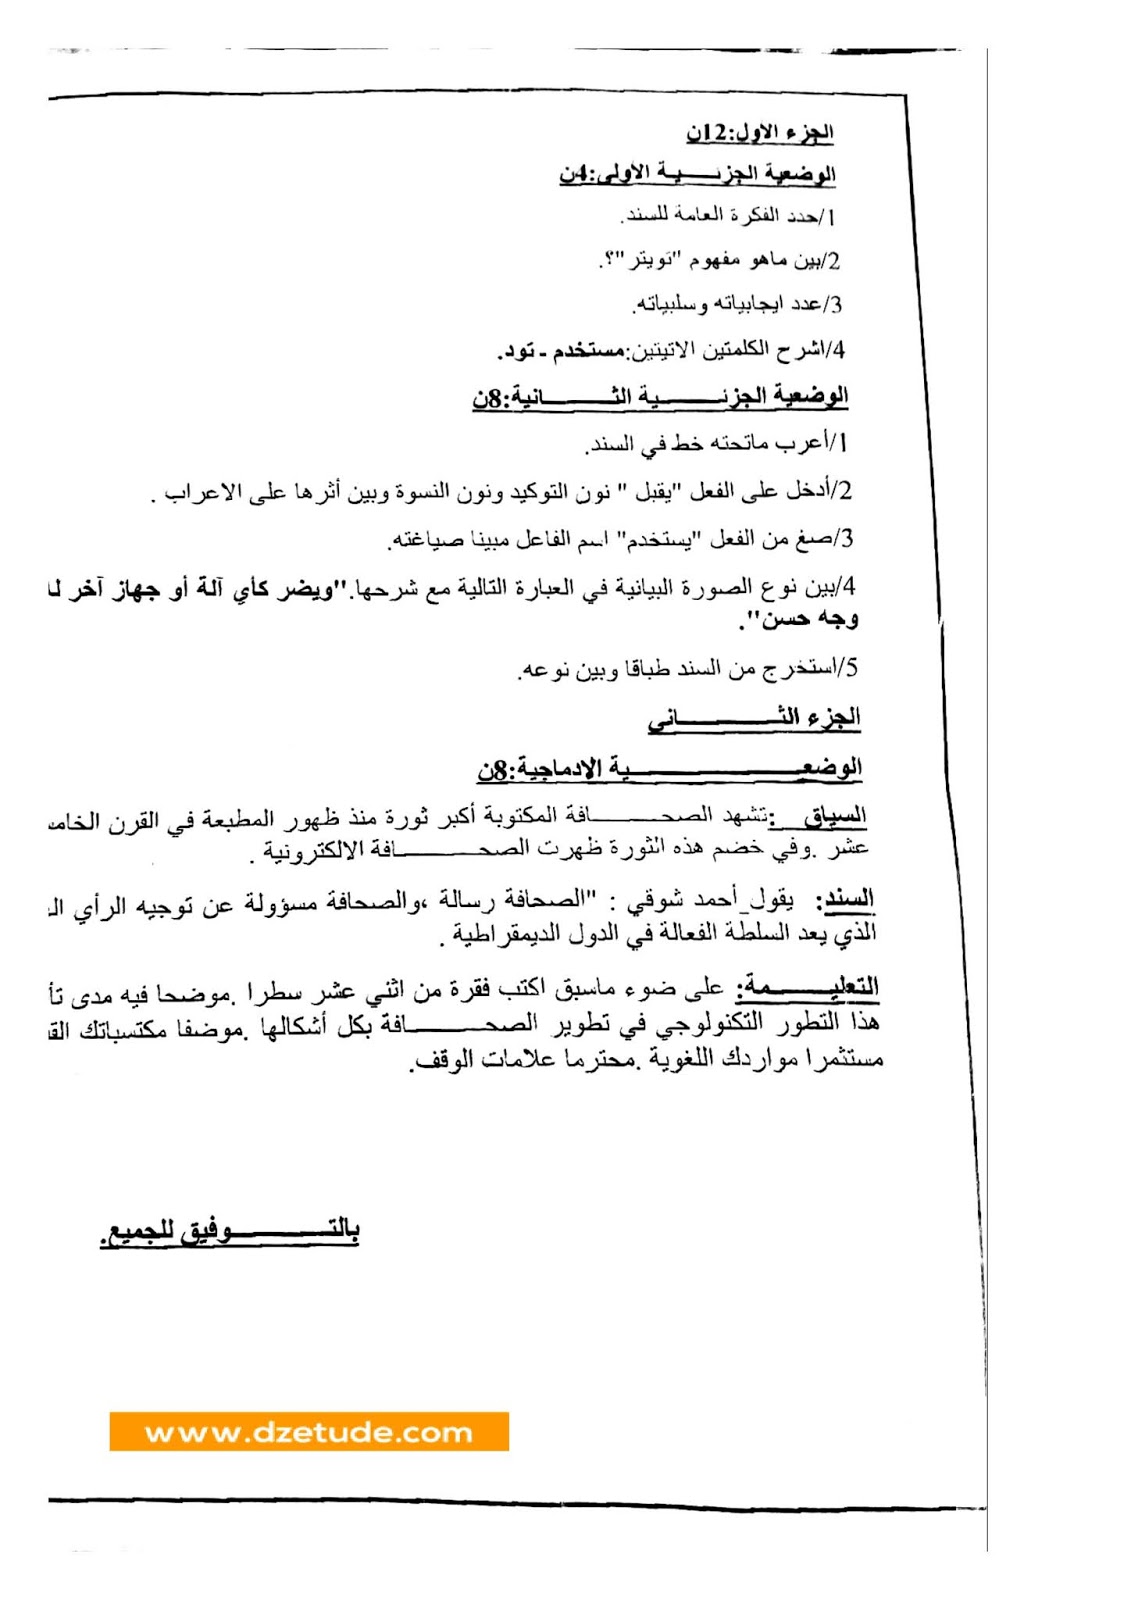 إختبار اللغة العربية الفصل الأول للسنة الثالثة متوسط - الجيل الثاني نموذج 7